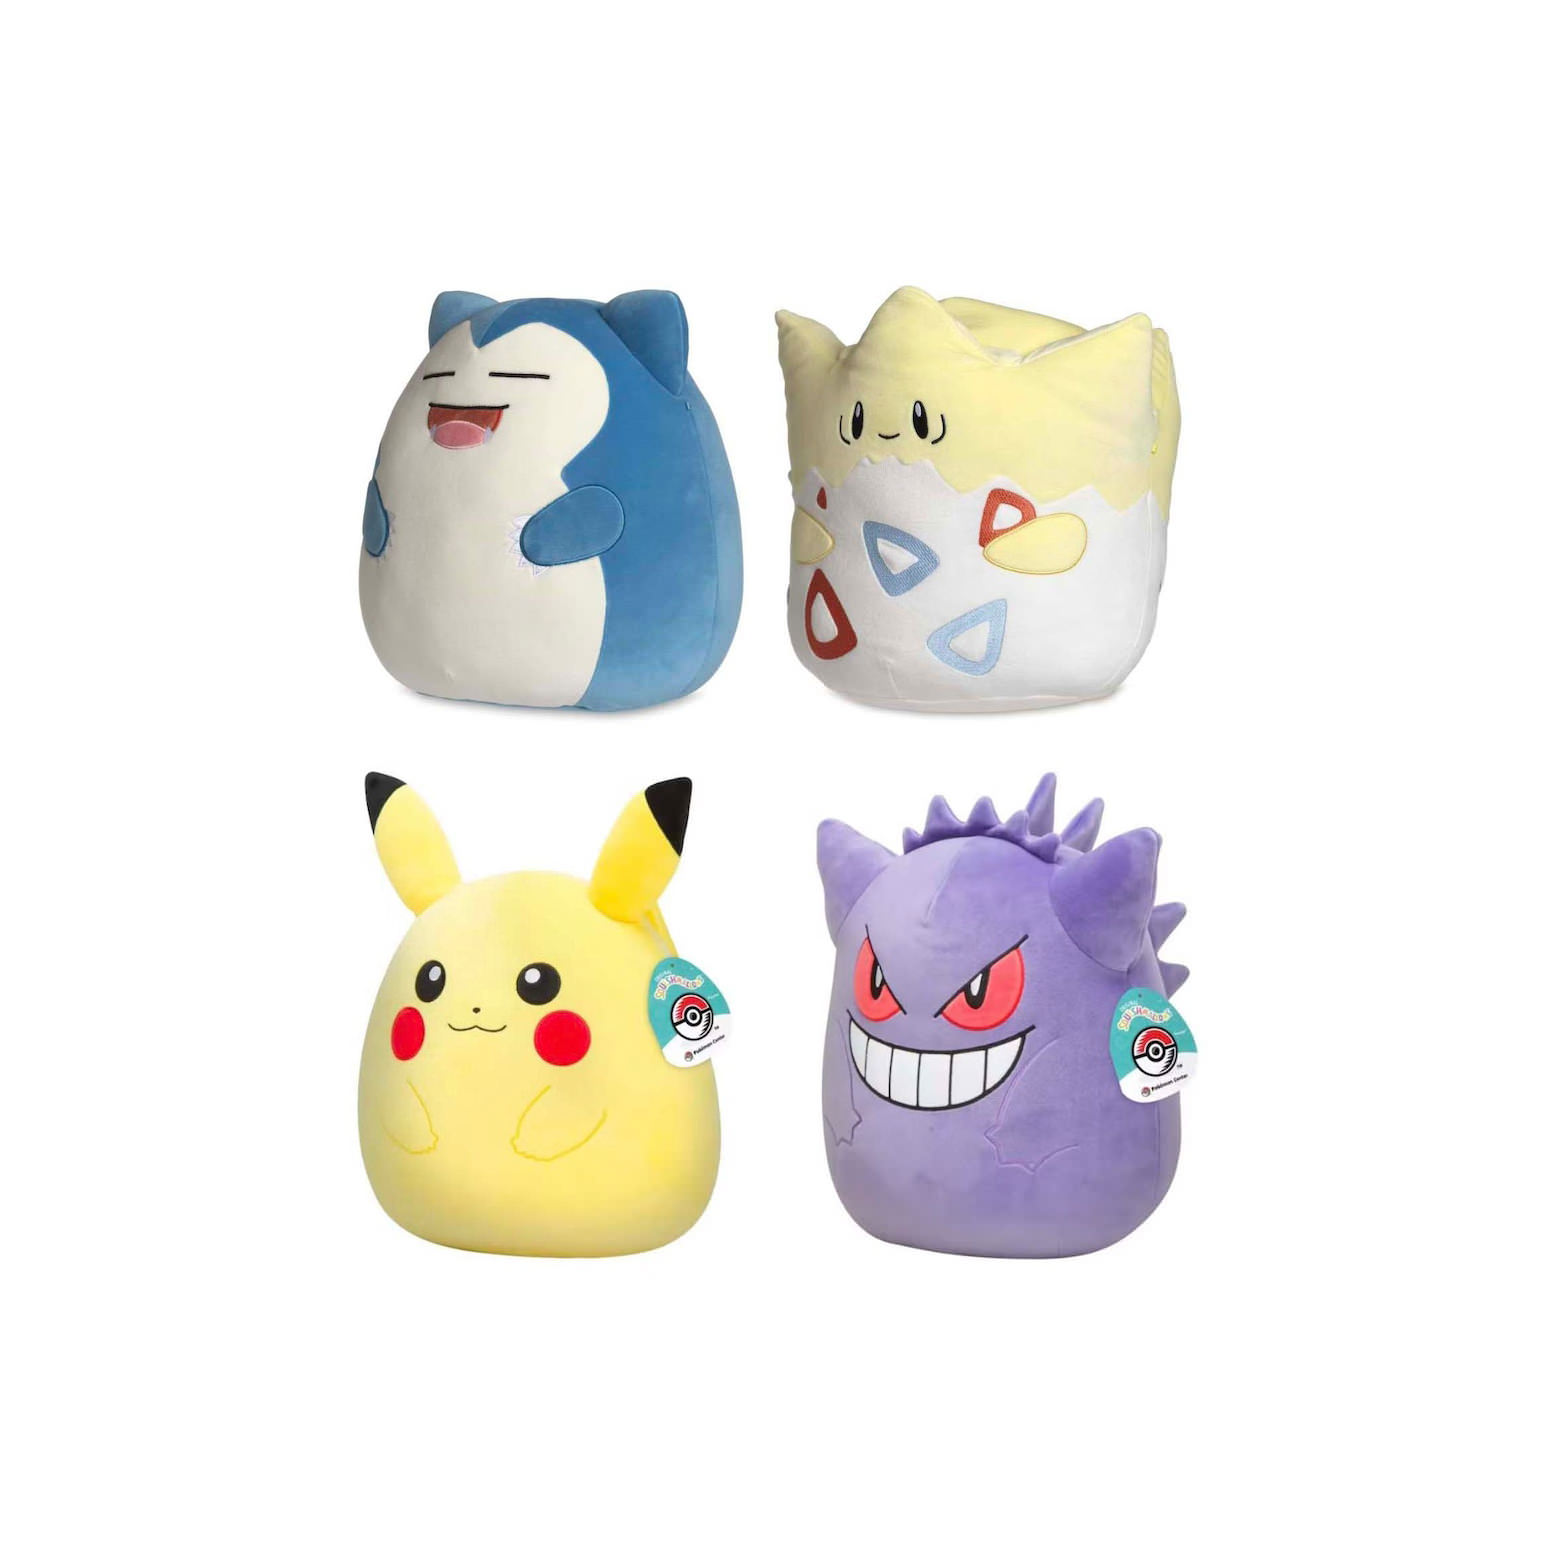 Squishmallow Pokemon Center Snorlax, Togepi, Pikachu and Snorlax 12″ Pokemon Center Exclusive Plush Set